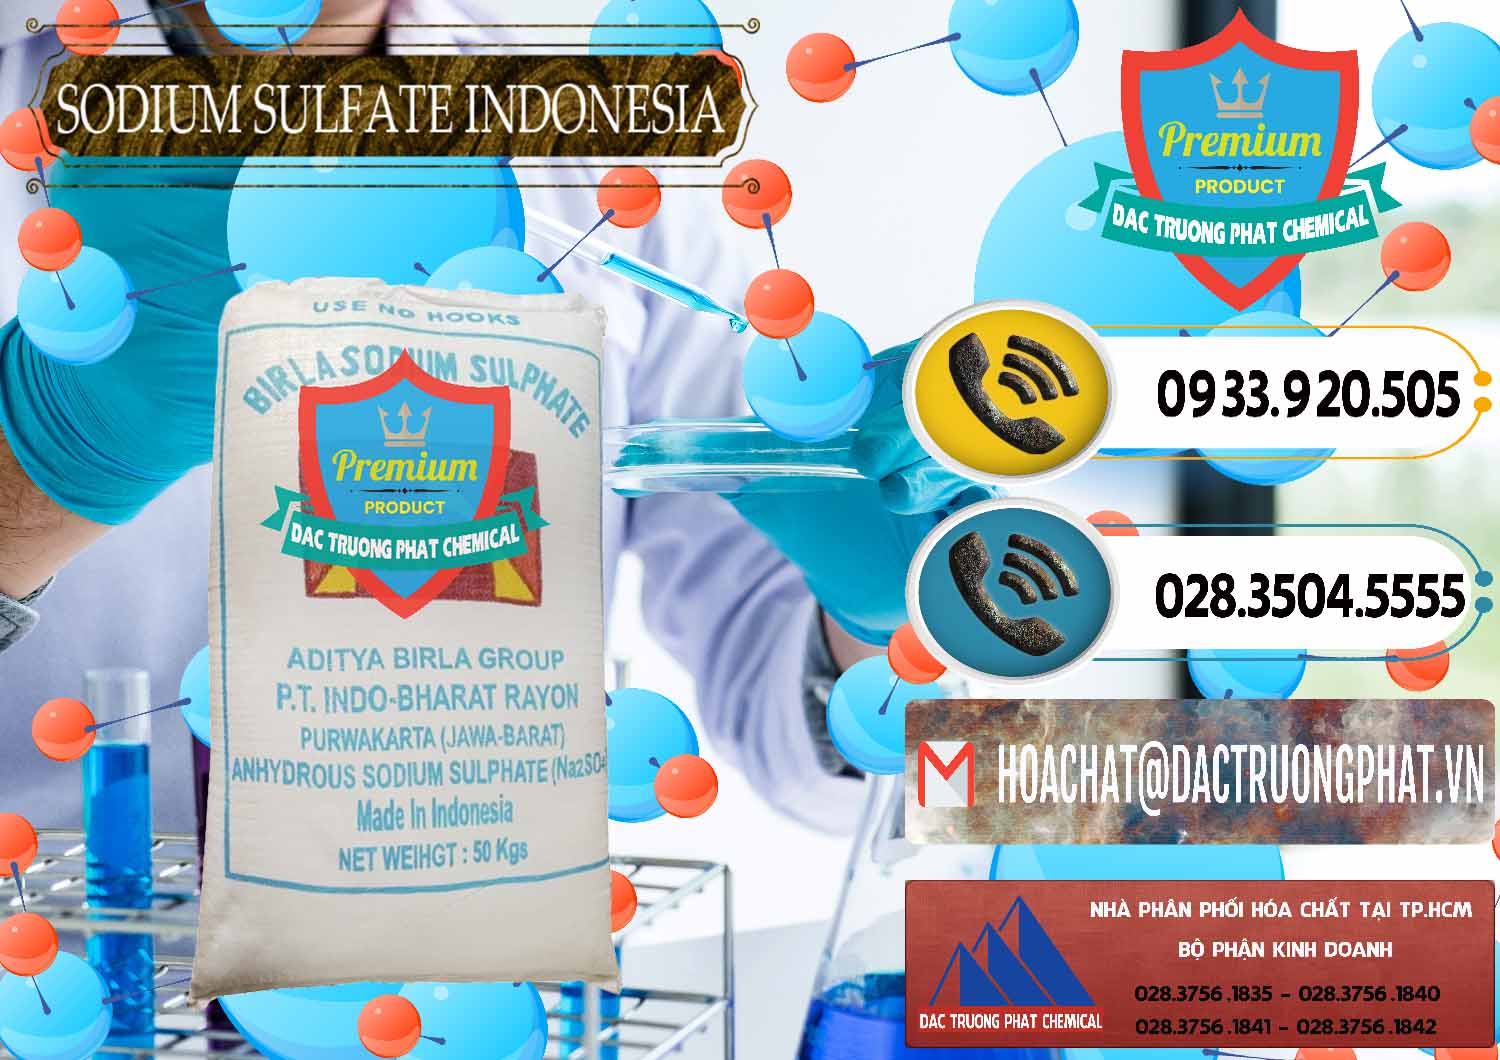 Cty chuyên kinh doanh _ bán Sodium Sulphate - Muối Sunfat Na2SO4 99% Indonesia - 0459 - Công ty bán ( phân phối ) hóa chất tại TP.HCM - hoachatdetnhuom.vn